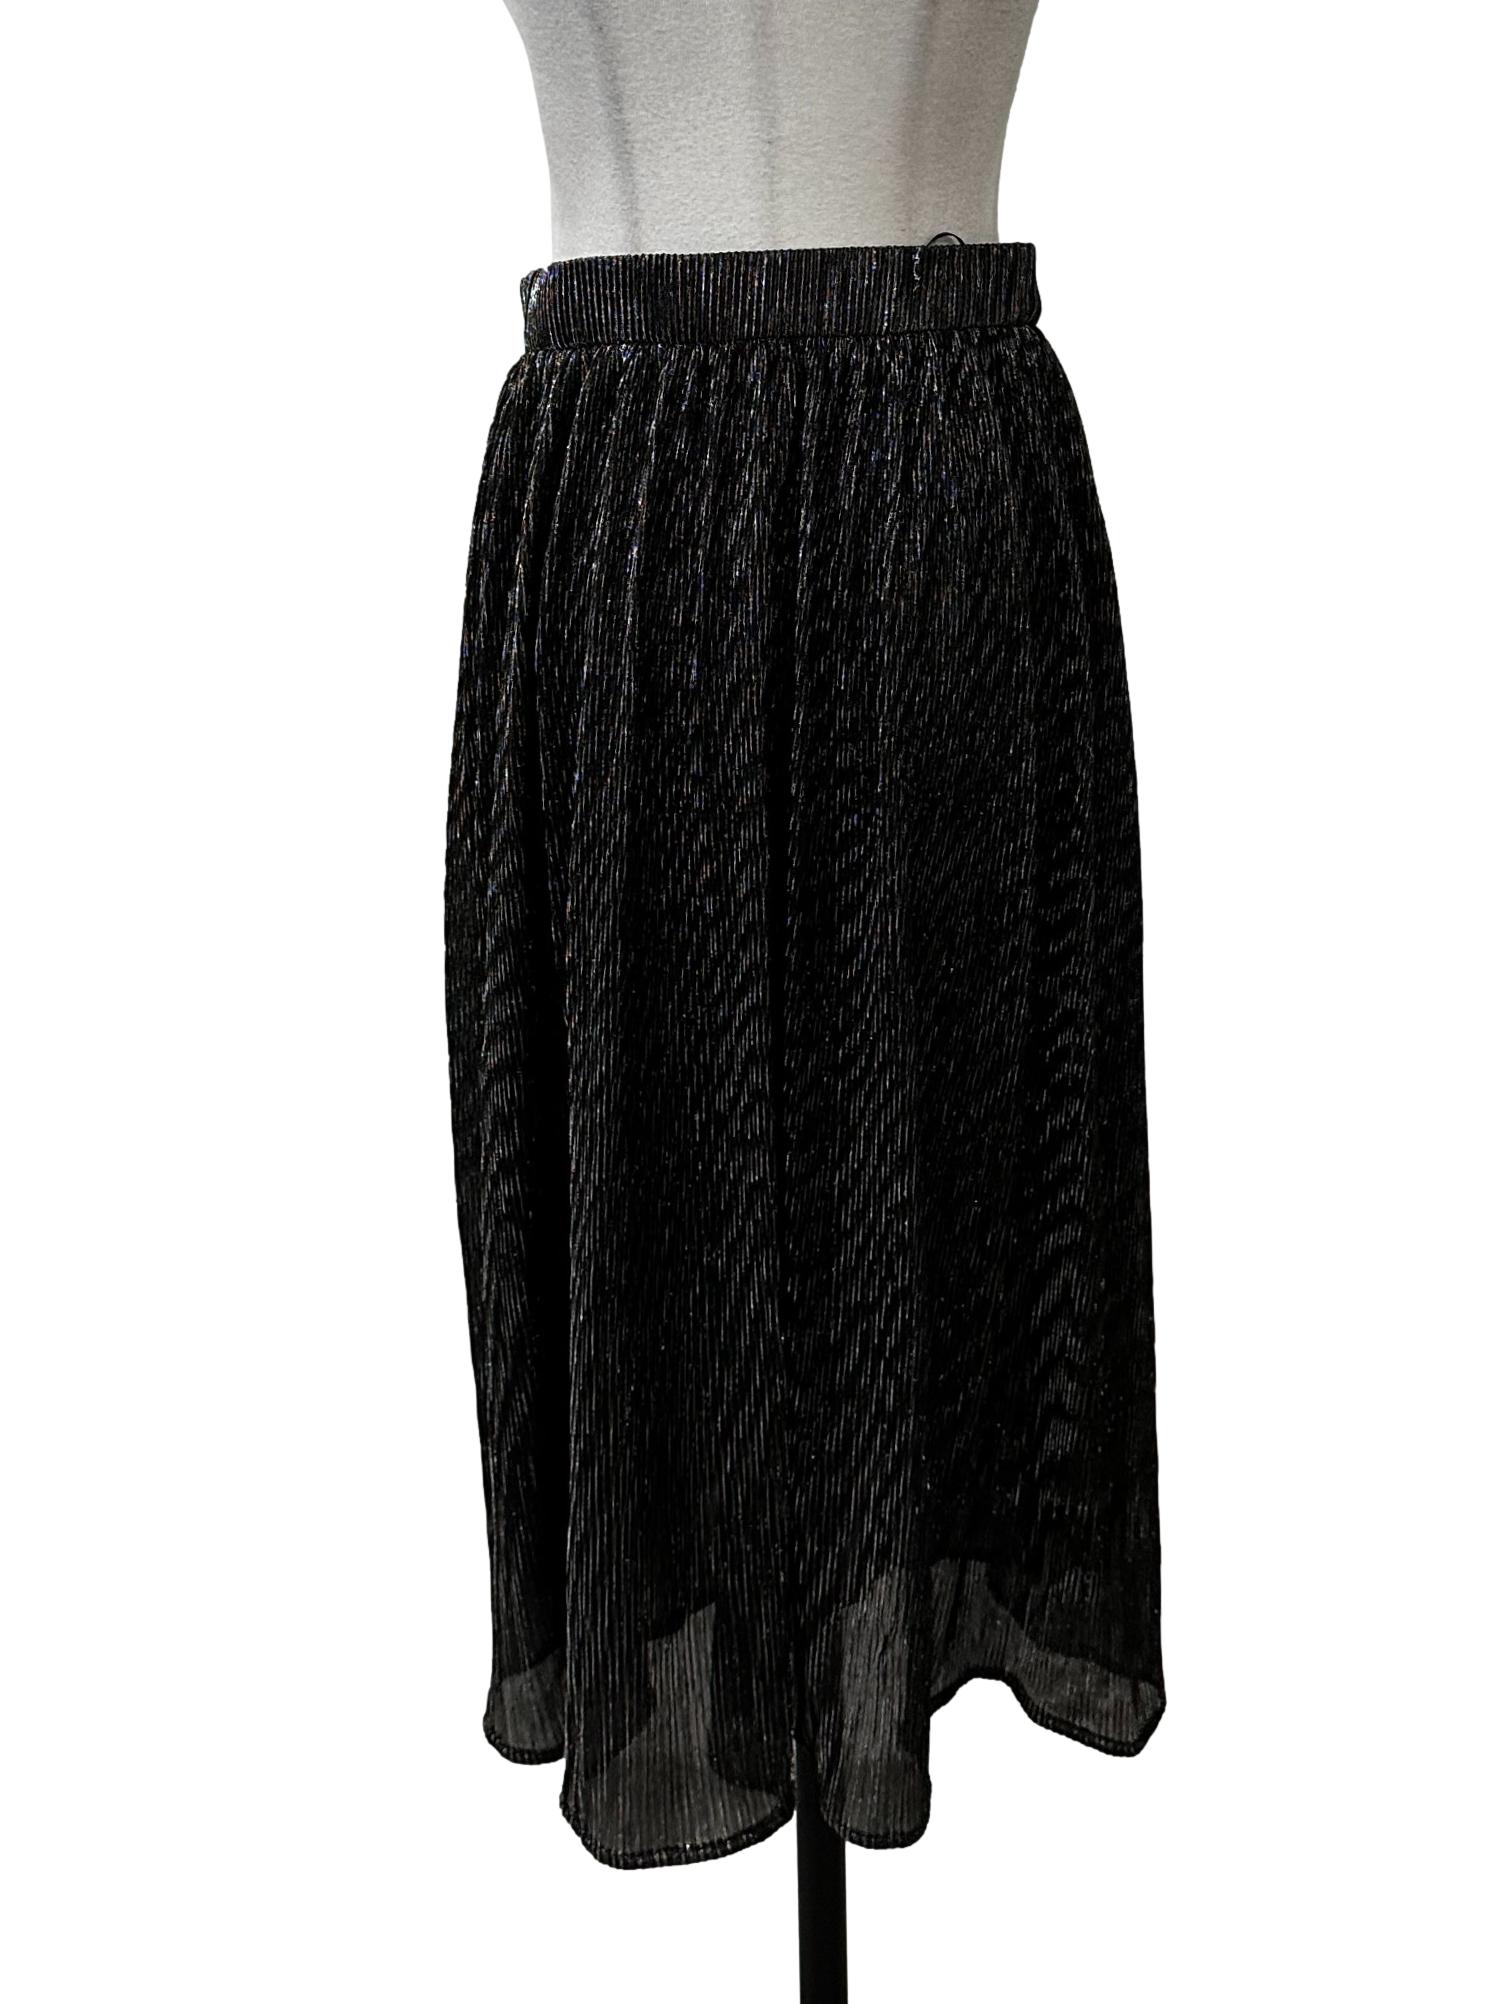 Black Shimmery Tube Skirt